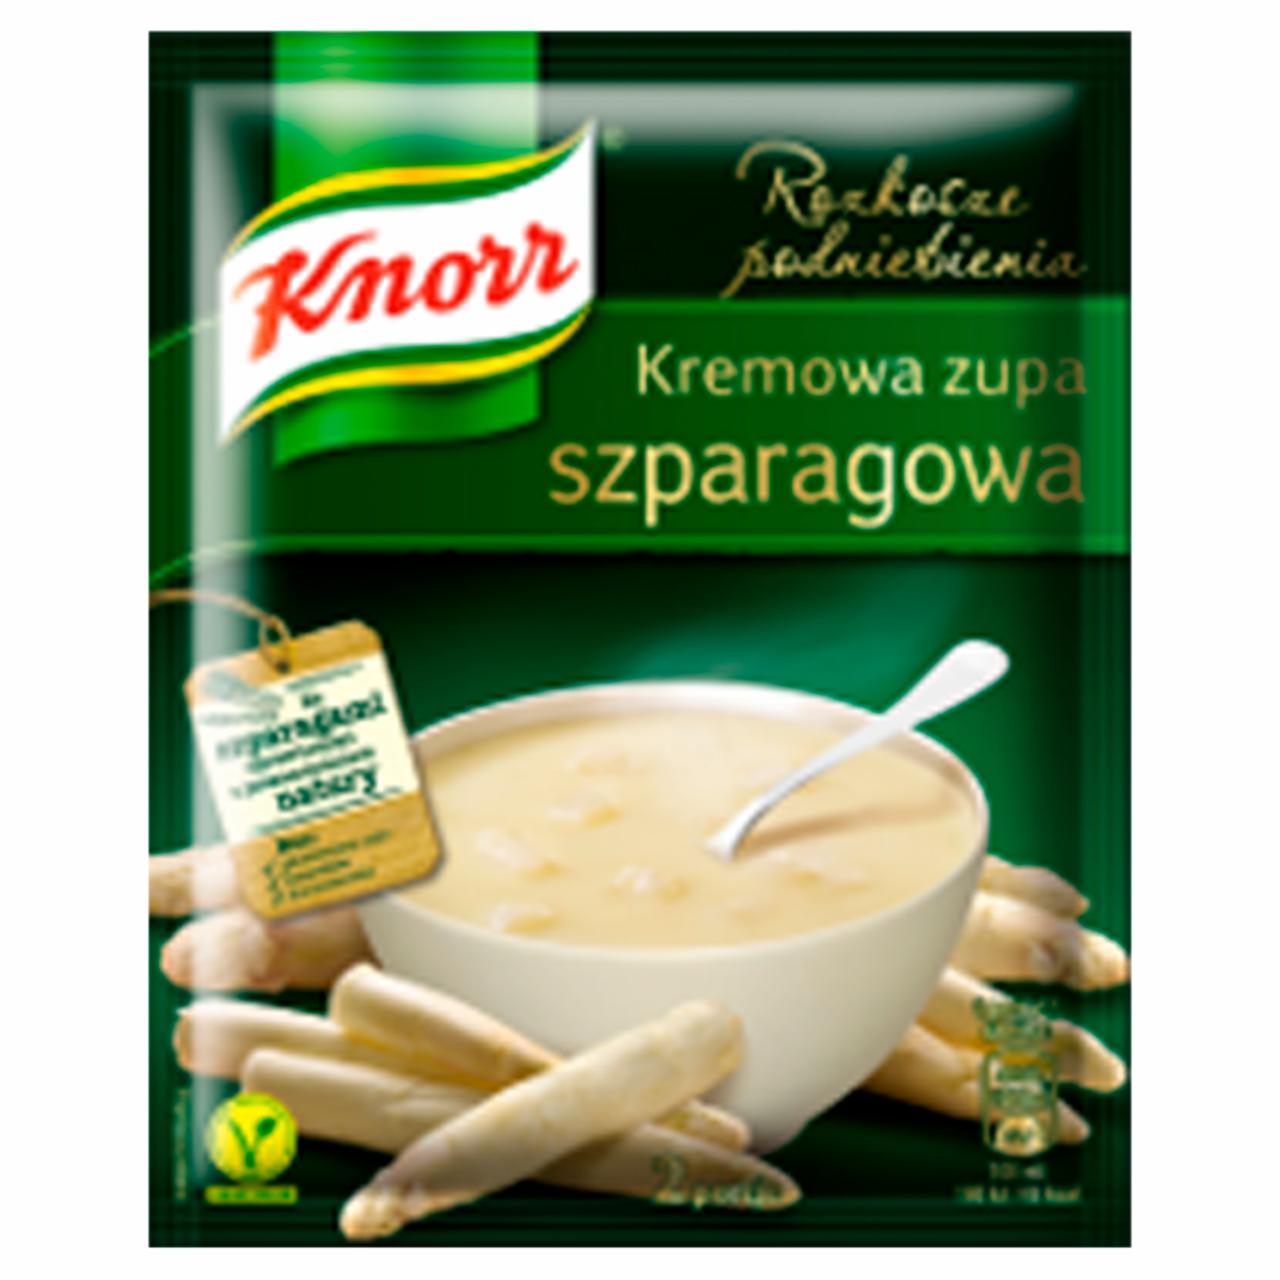 Zdjęcia - Knorr Rozkosze podniebienia Kremowa zupa szparagowa 49 g